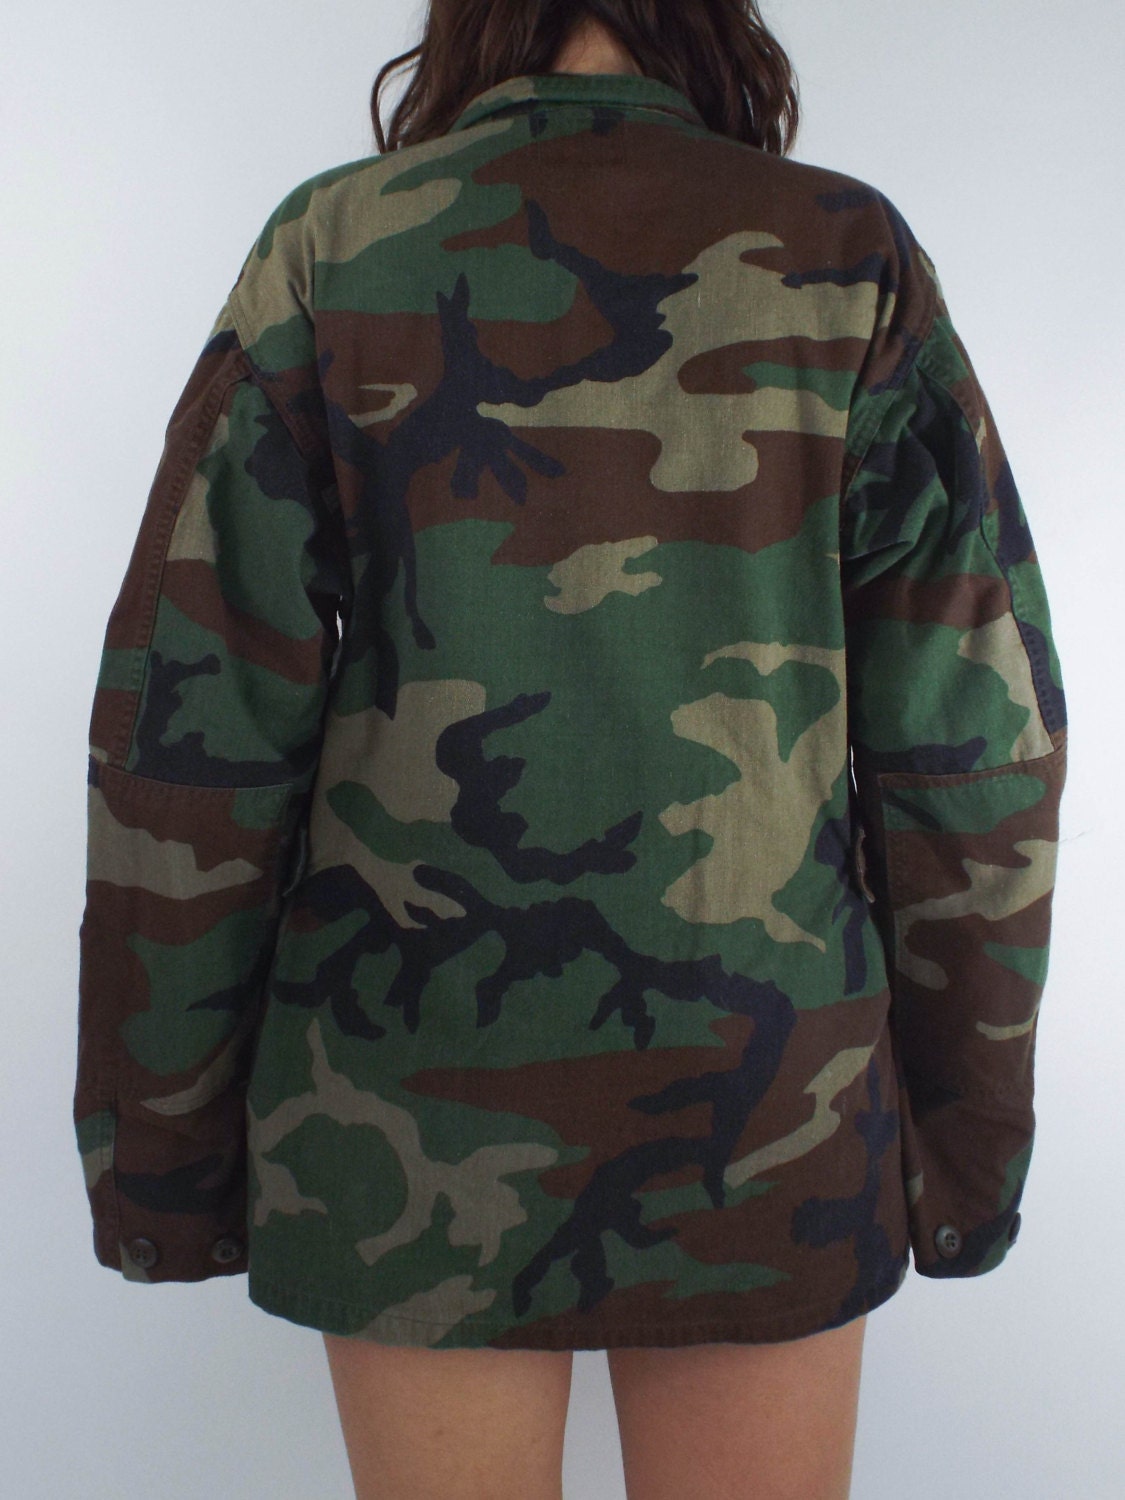 Vintage Oversized Camouflage Print Army Jacket | Etsy